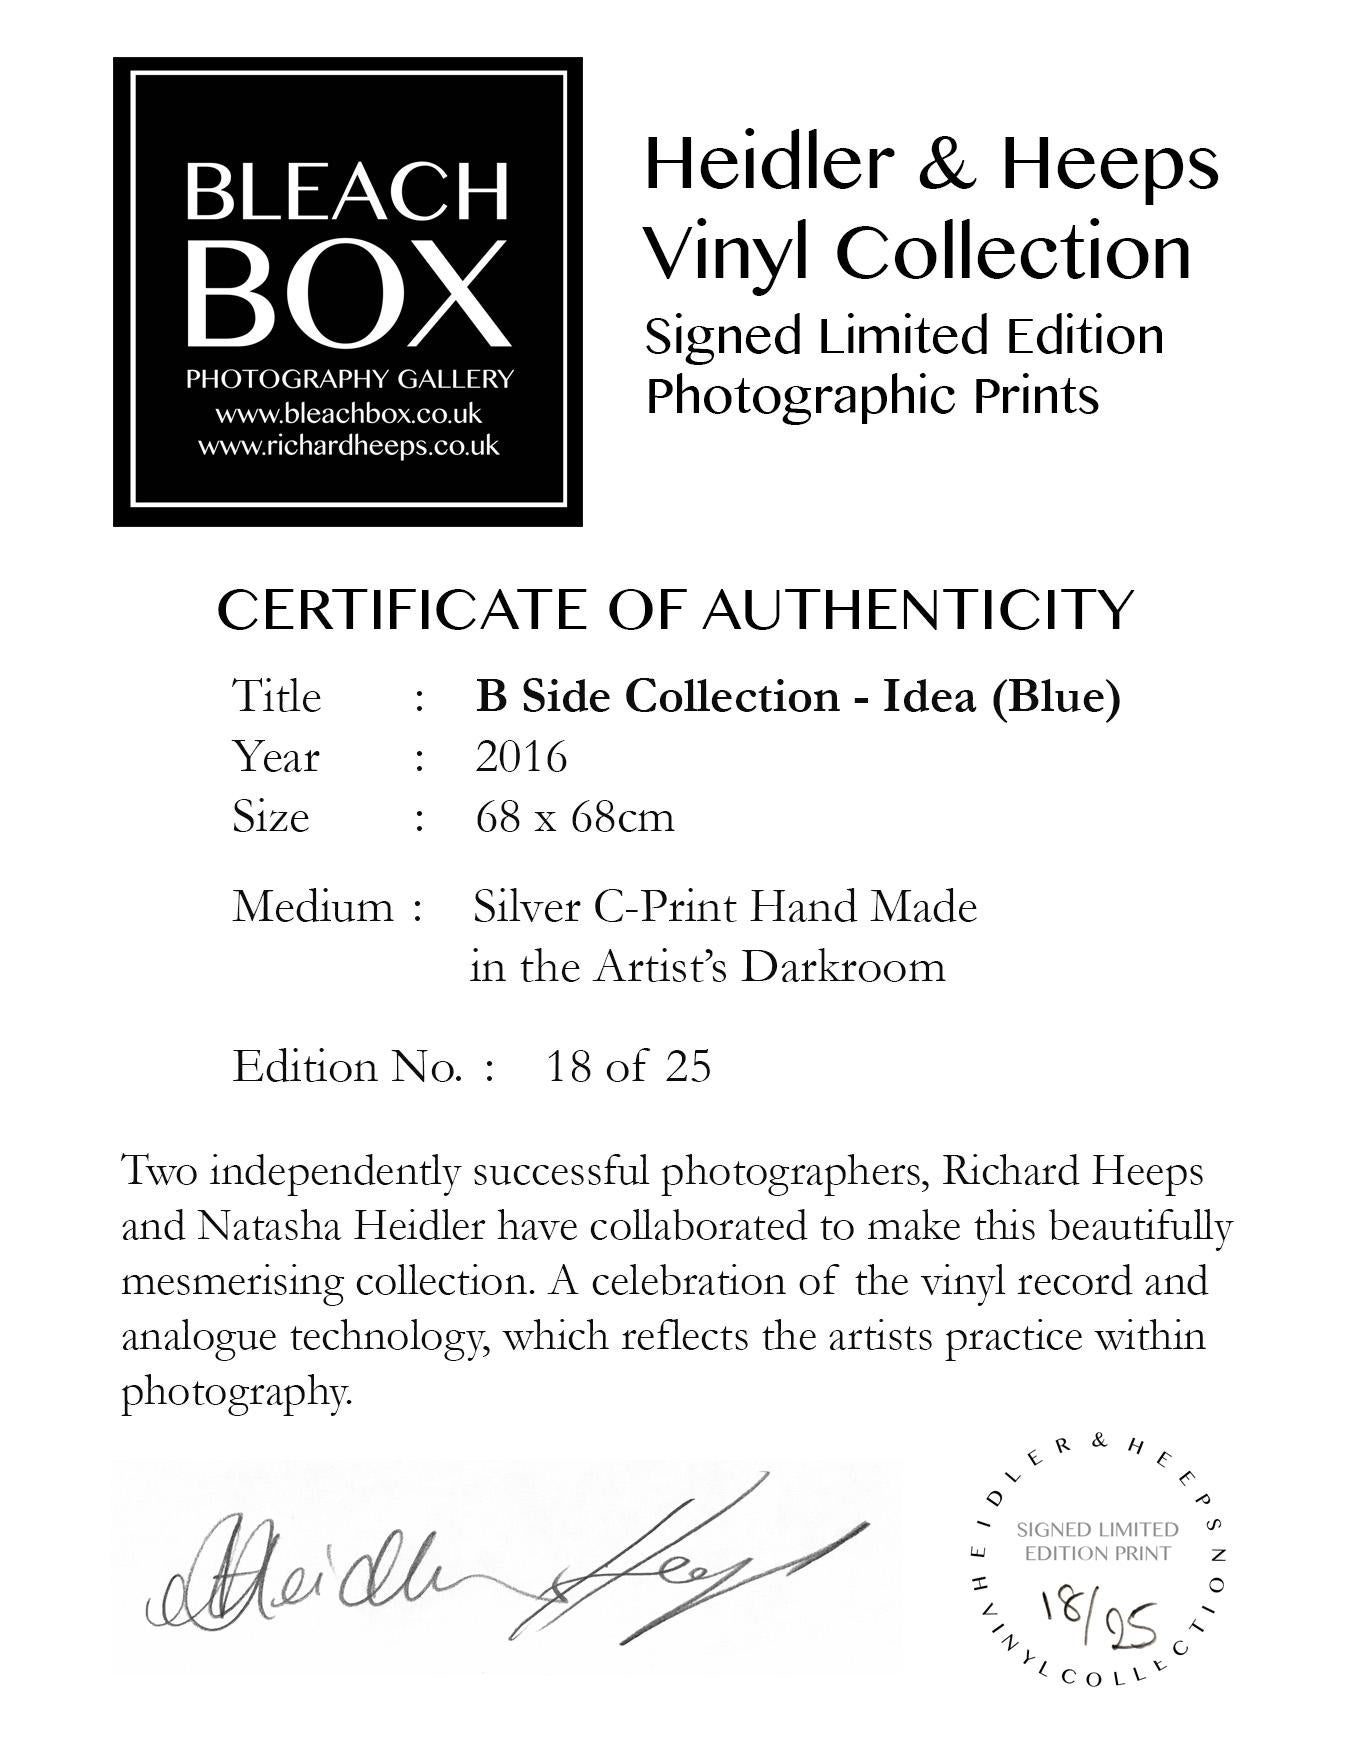 Collection B Side Vinyl, Idea (B Side Vinyl), Photogrpahy couleur Pop Art contemporain - Bleu Color Photograph par Heidler & Heeps